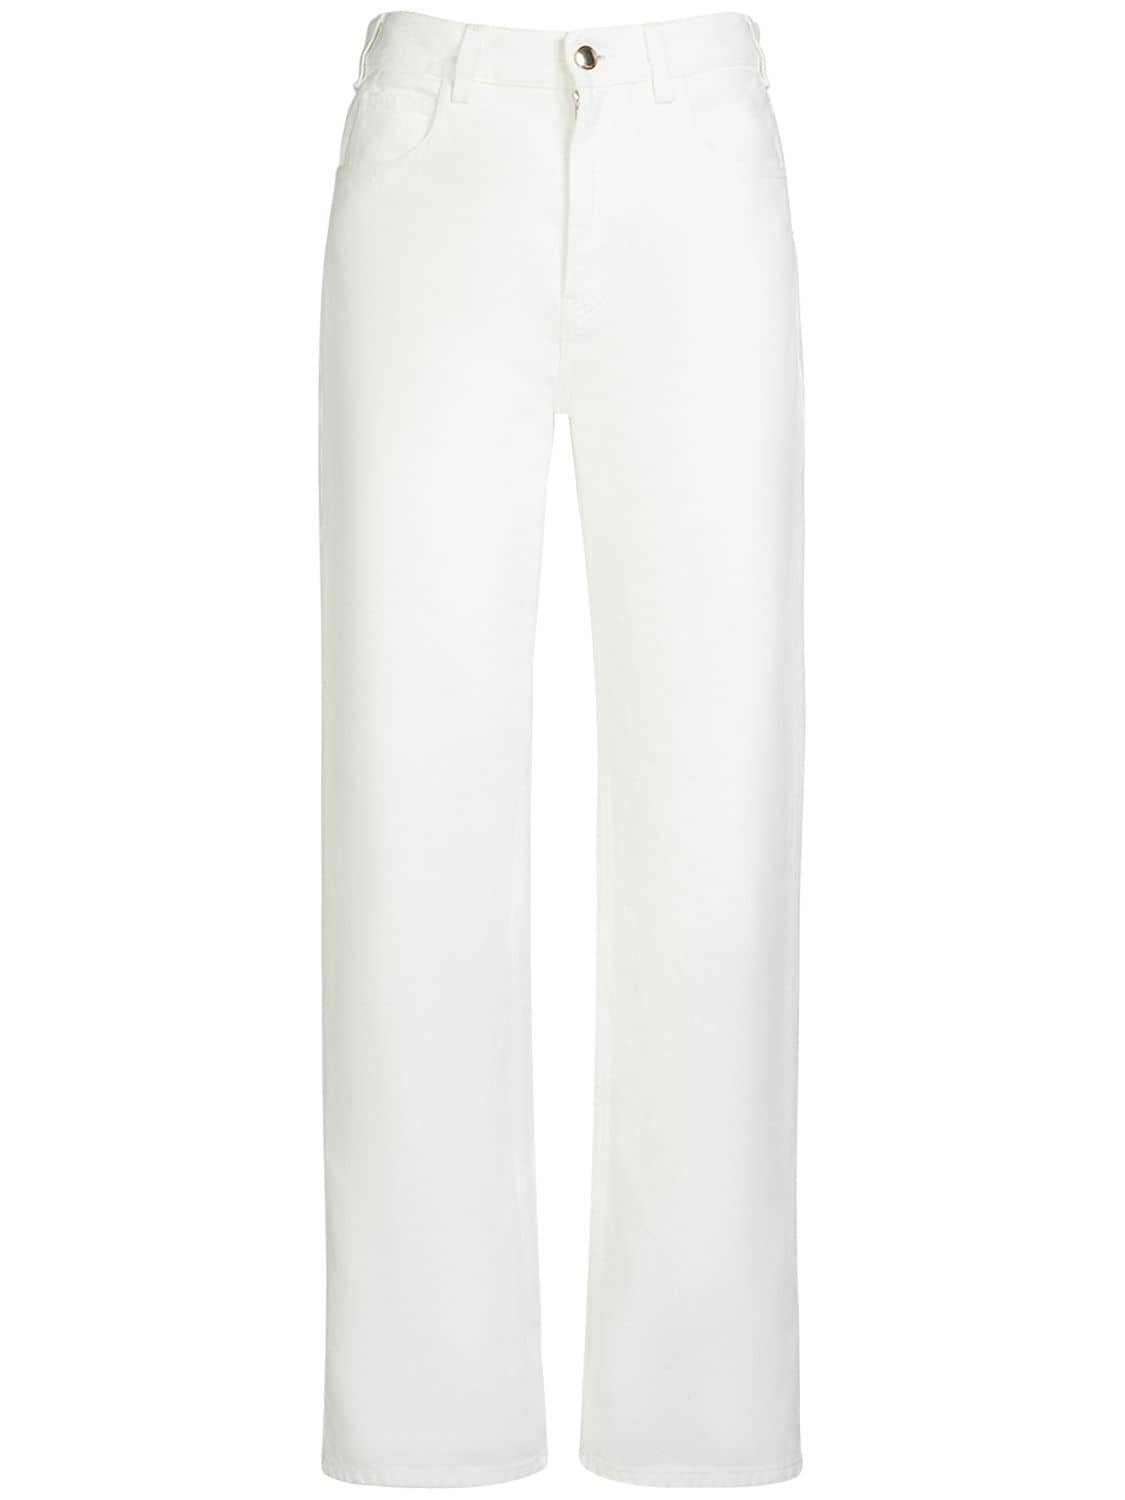 Chloé Pantalon Court Droit « Masaya » Femme Blanc Taille 30 87% Coton, 13% Chanvre